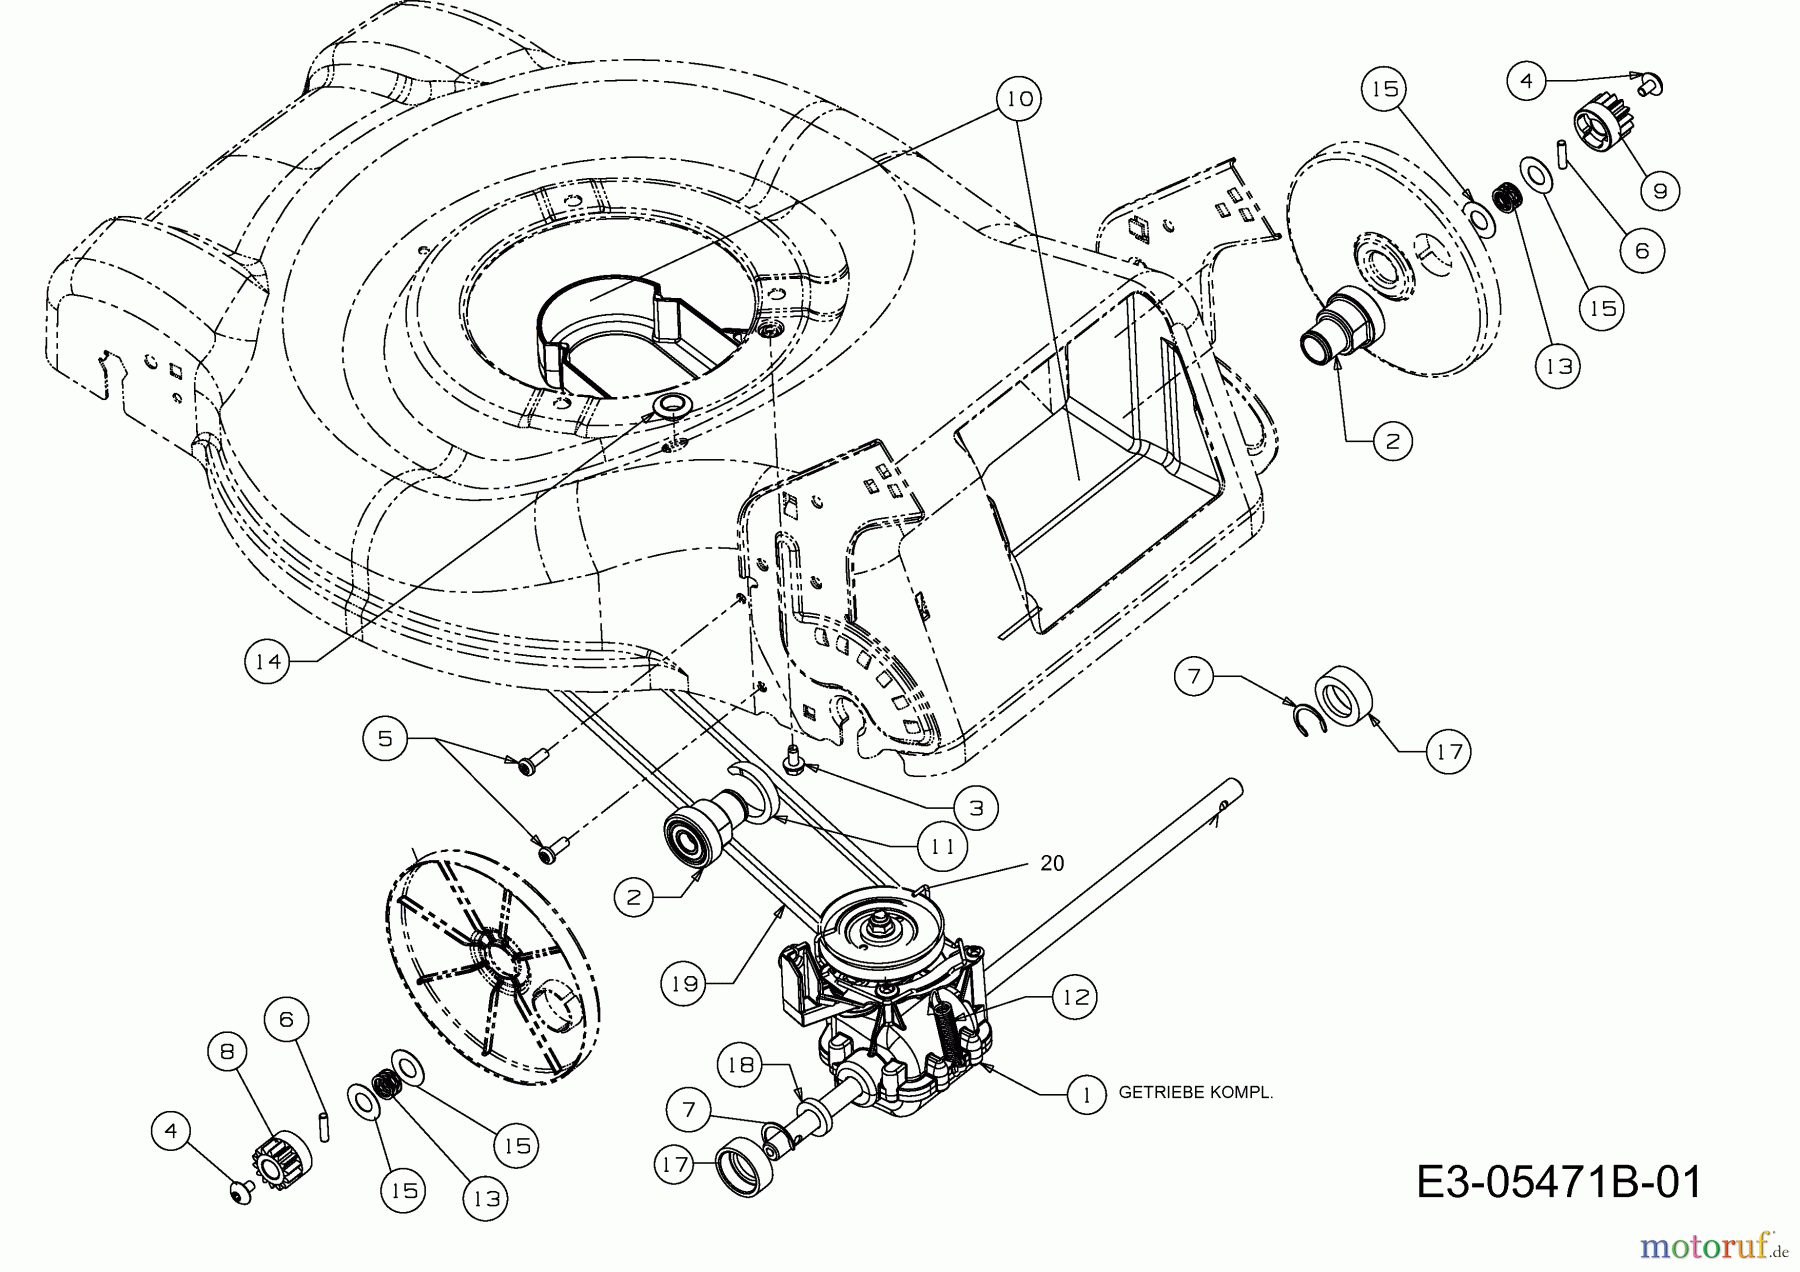  Mastercut Petrol mower self propelled MC 46 SPB 12A-J75B659  (2015) Gearbox, Belt